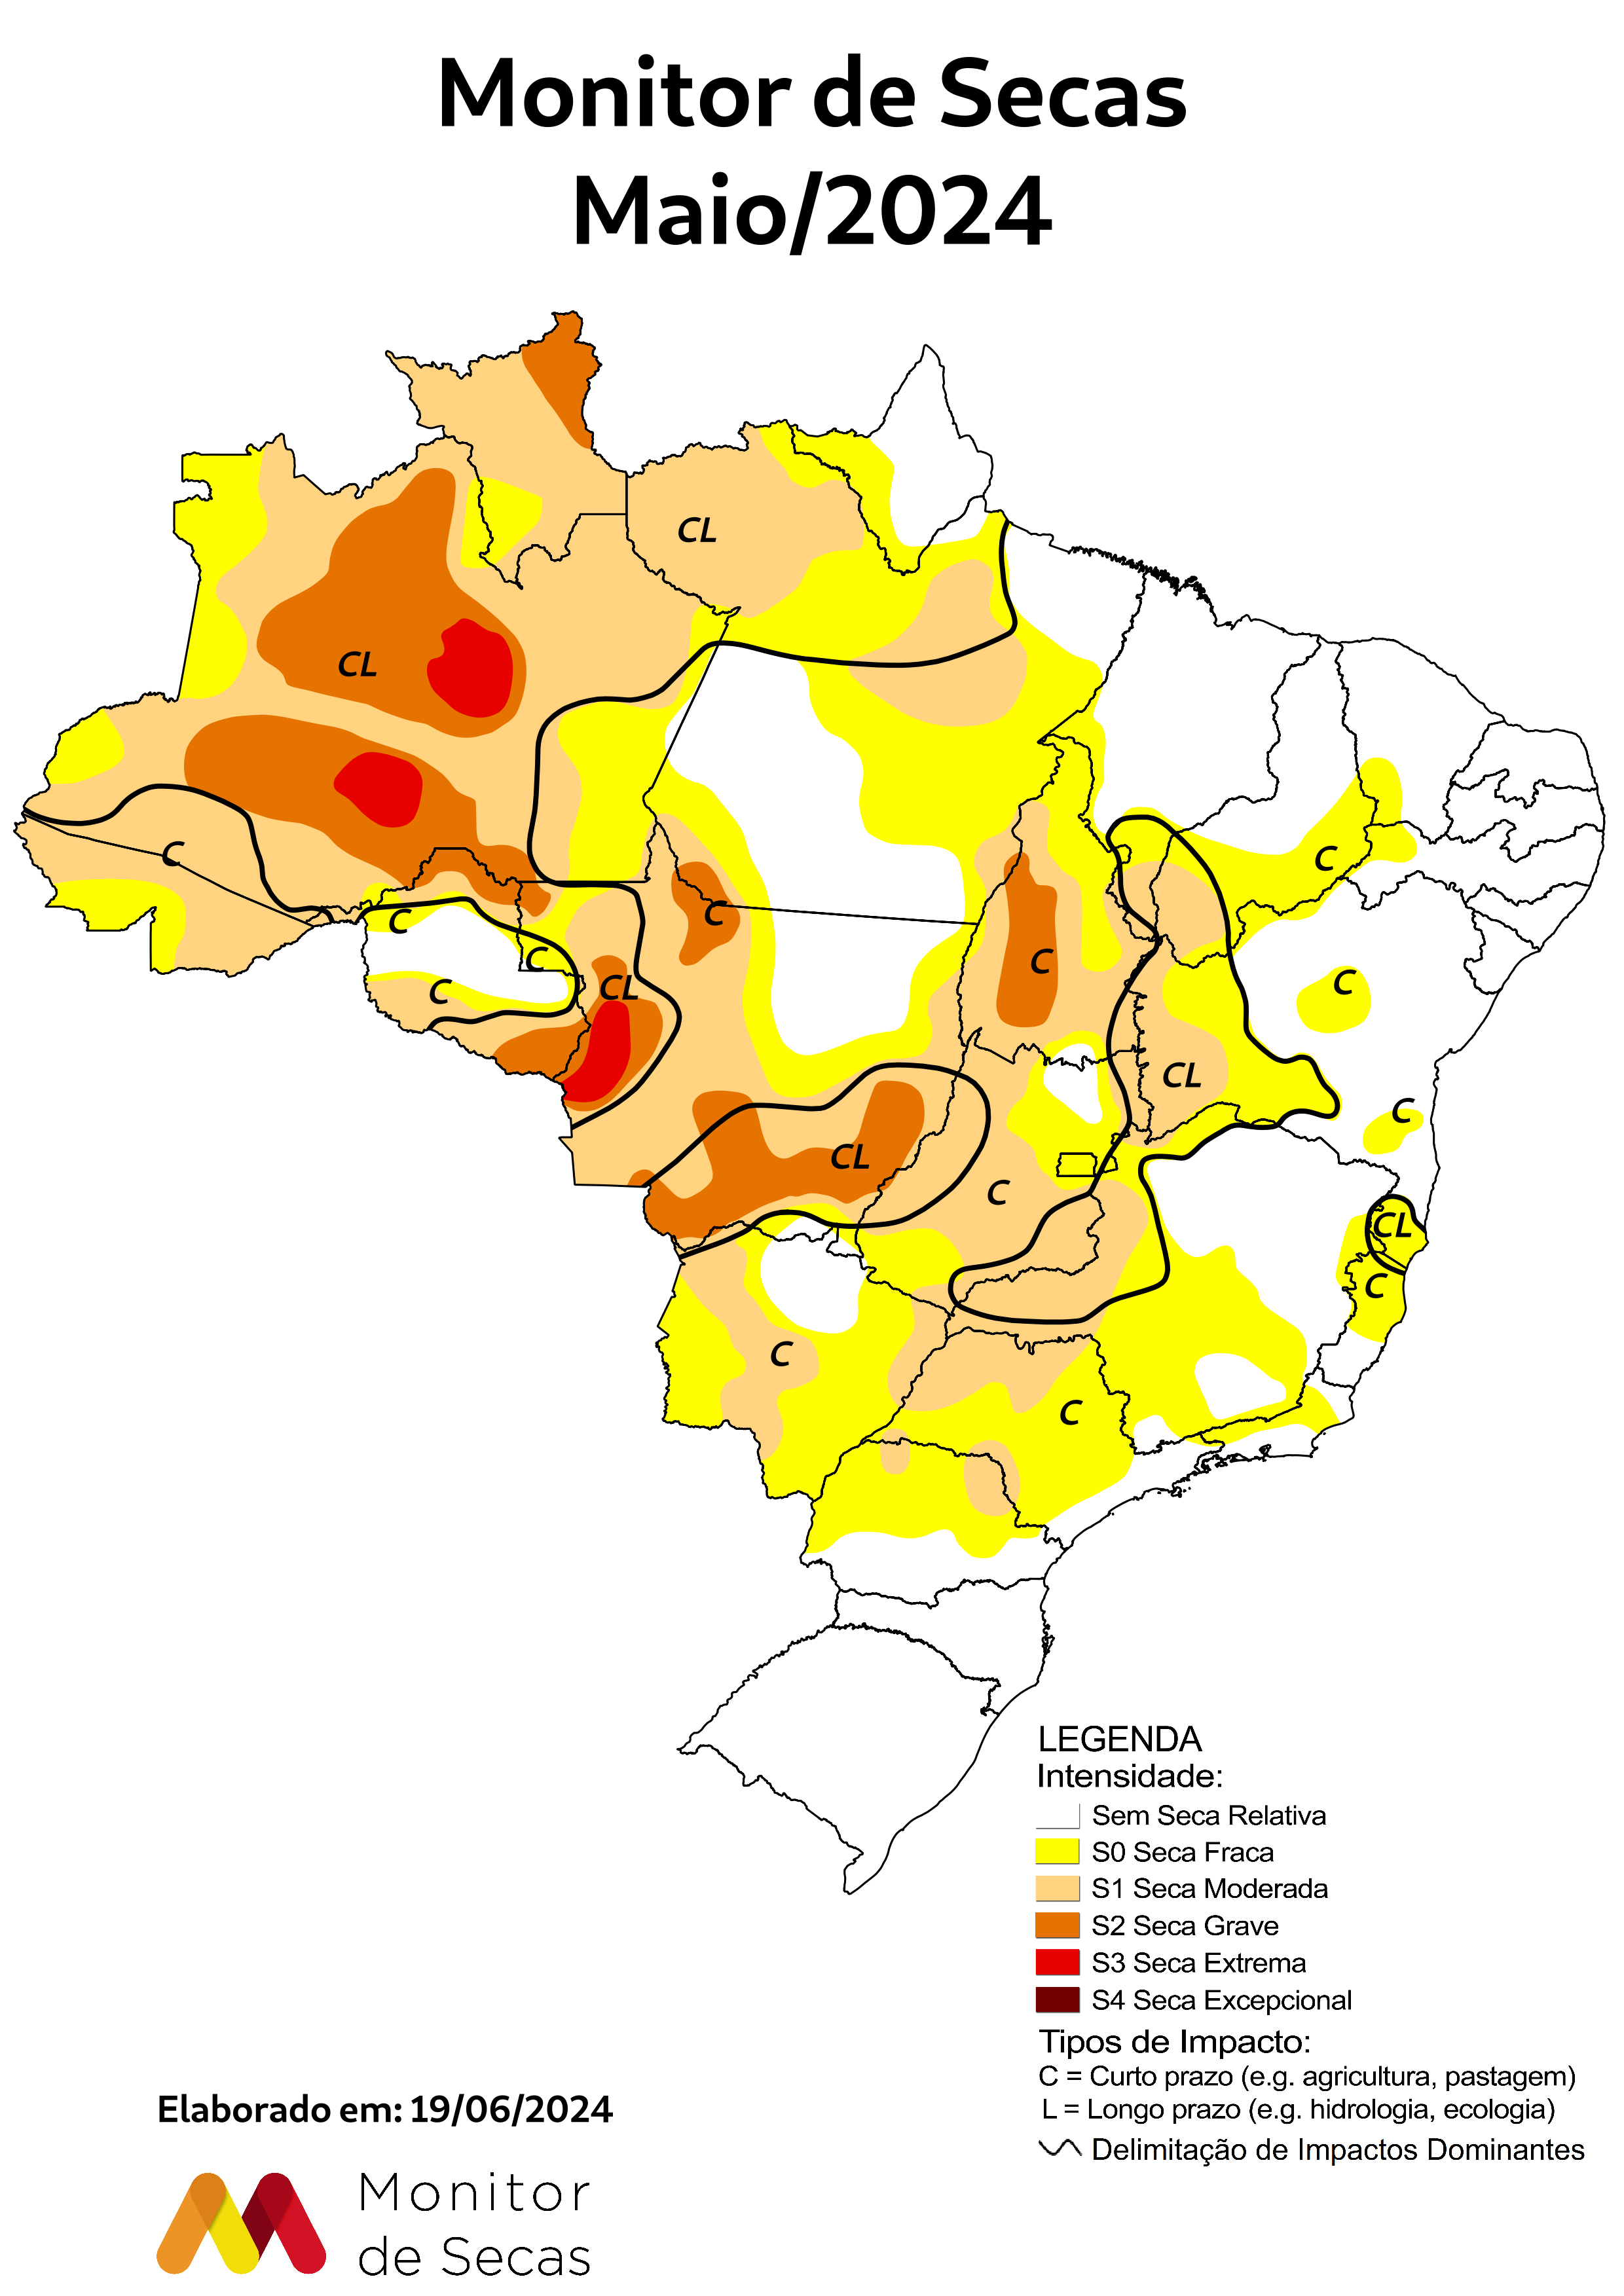 Mapa do Monitor de Secas relativo a maio (FOTO: Reprodução)